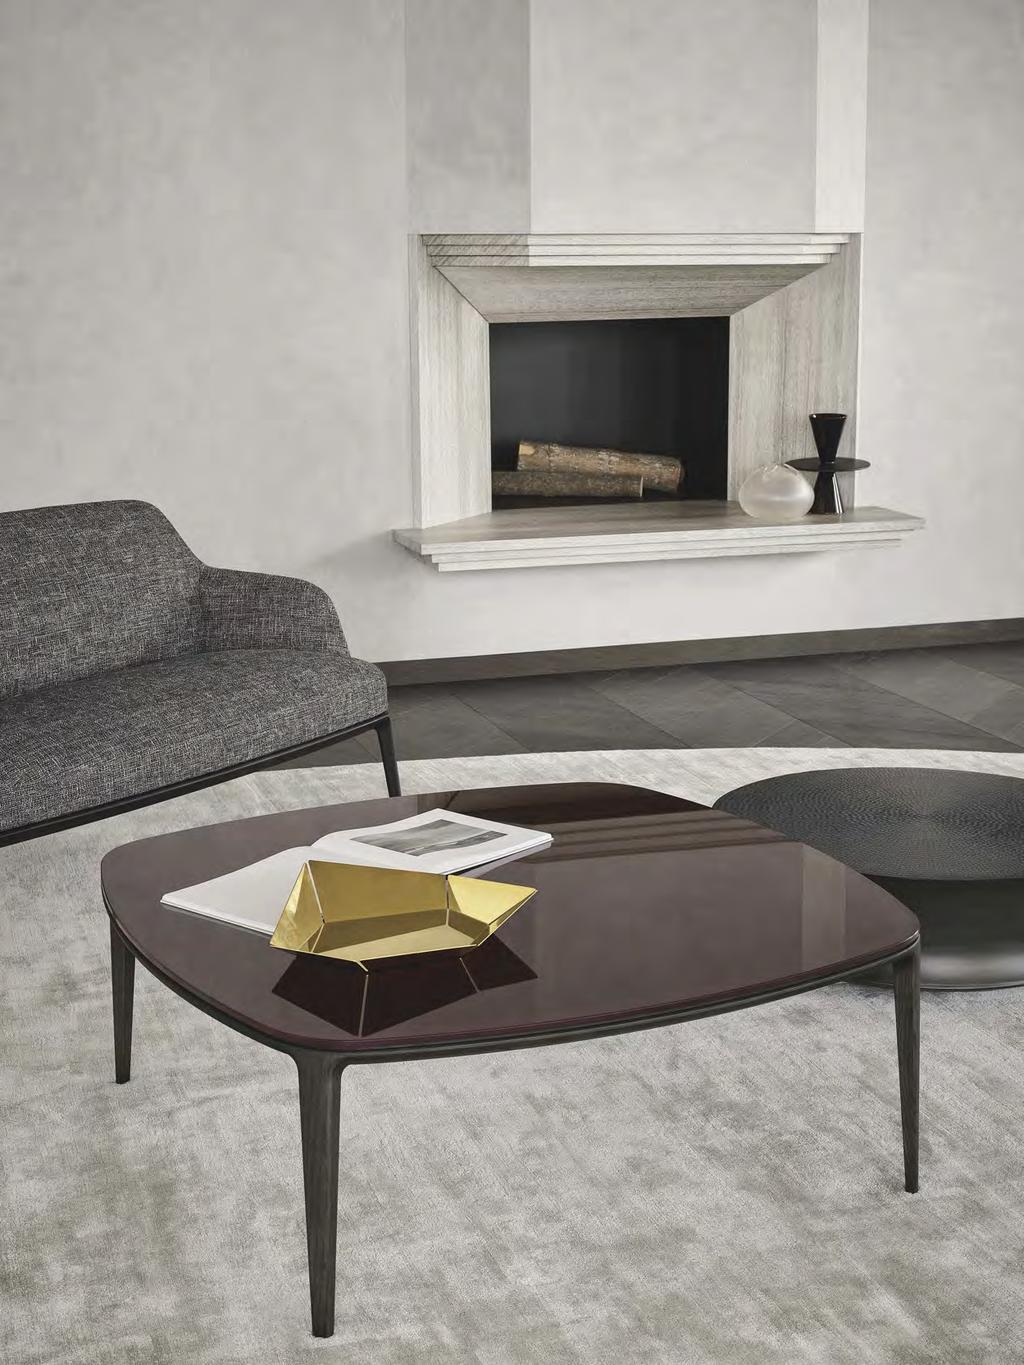 Emmanuel Gallina disegna una collezione di tavolini dall estetica lineare, con piano in marmo o vetro e struttura in essenza.